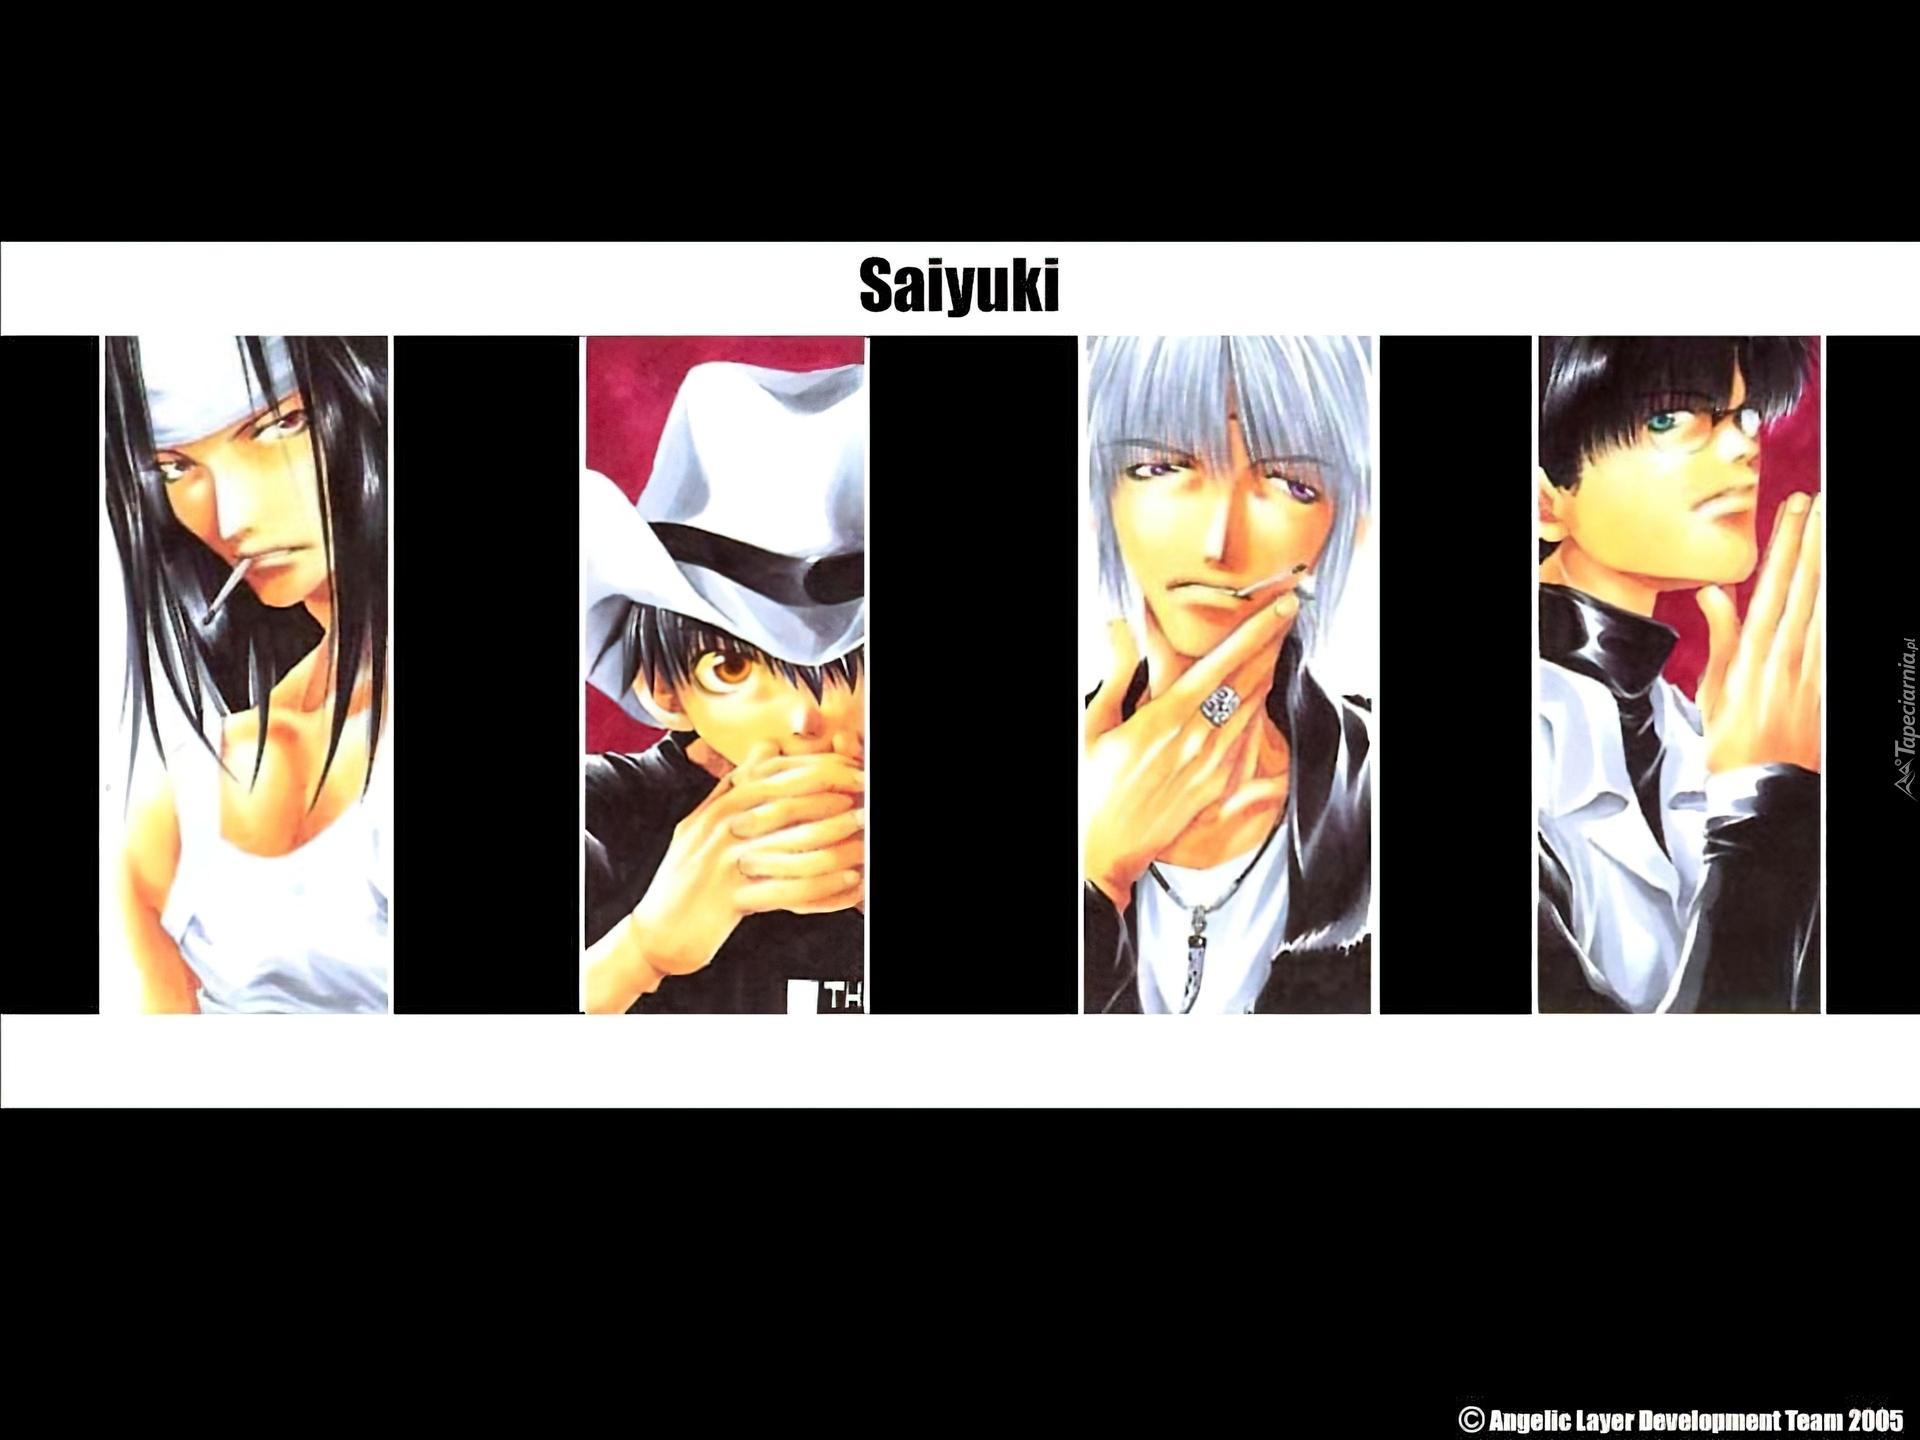 Saiyuki,  papieros, kapelusz, grupa